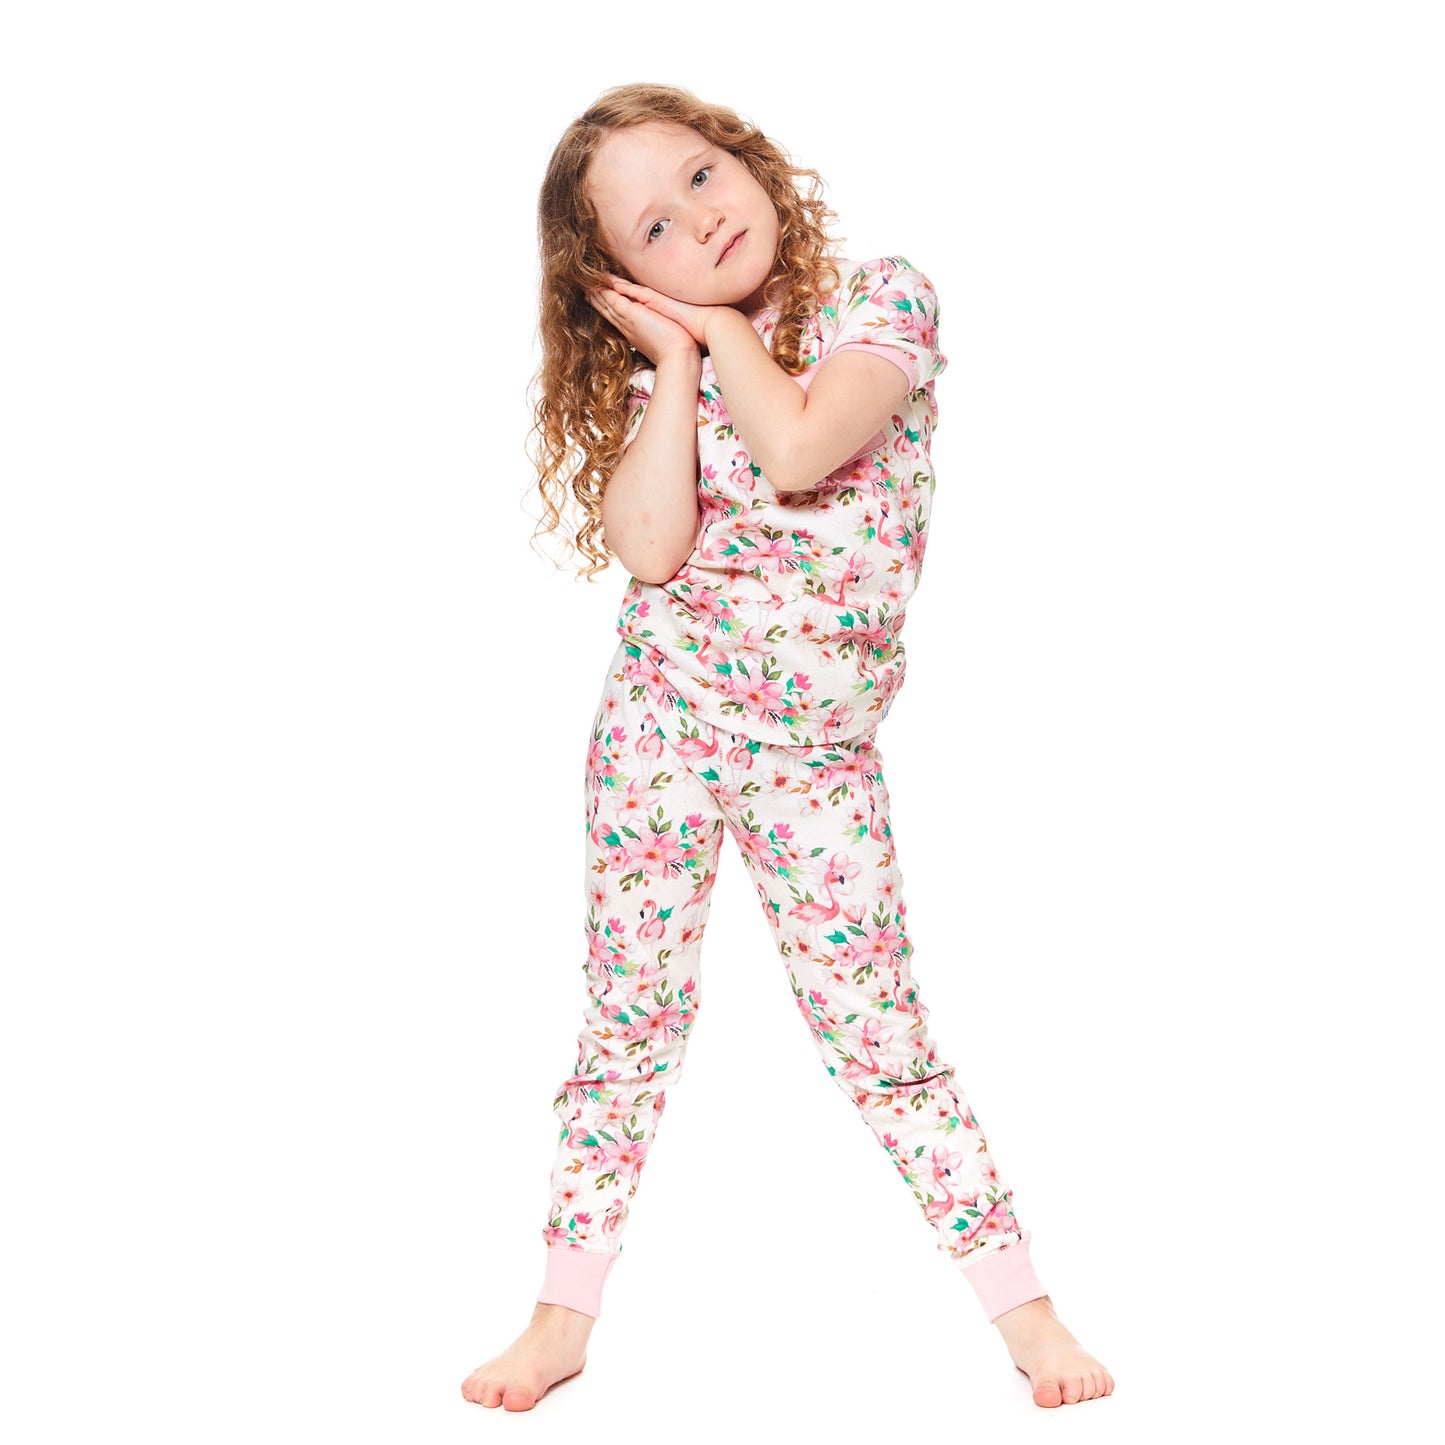 Pyjama 2 pièces «Flamant rose et fleurs» en coton organique E30PG11-035 - 3 à 12 ans